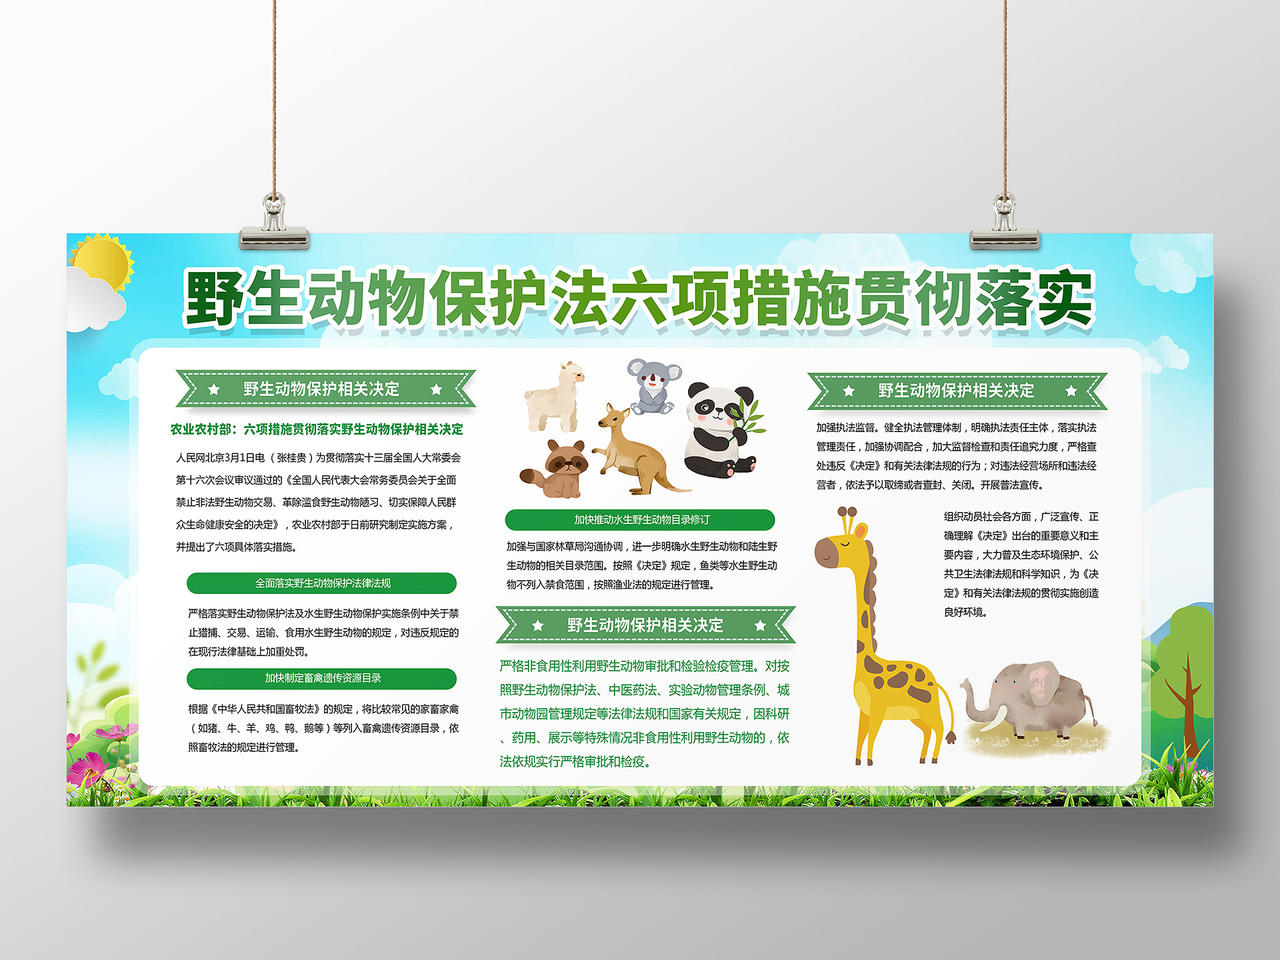 绿色环保城市动物野生动物保护法展板宣传保护动物